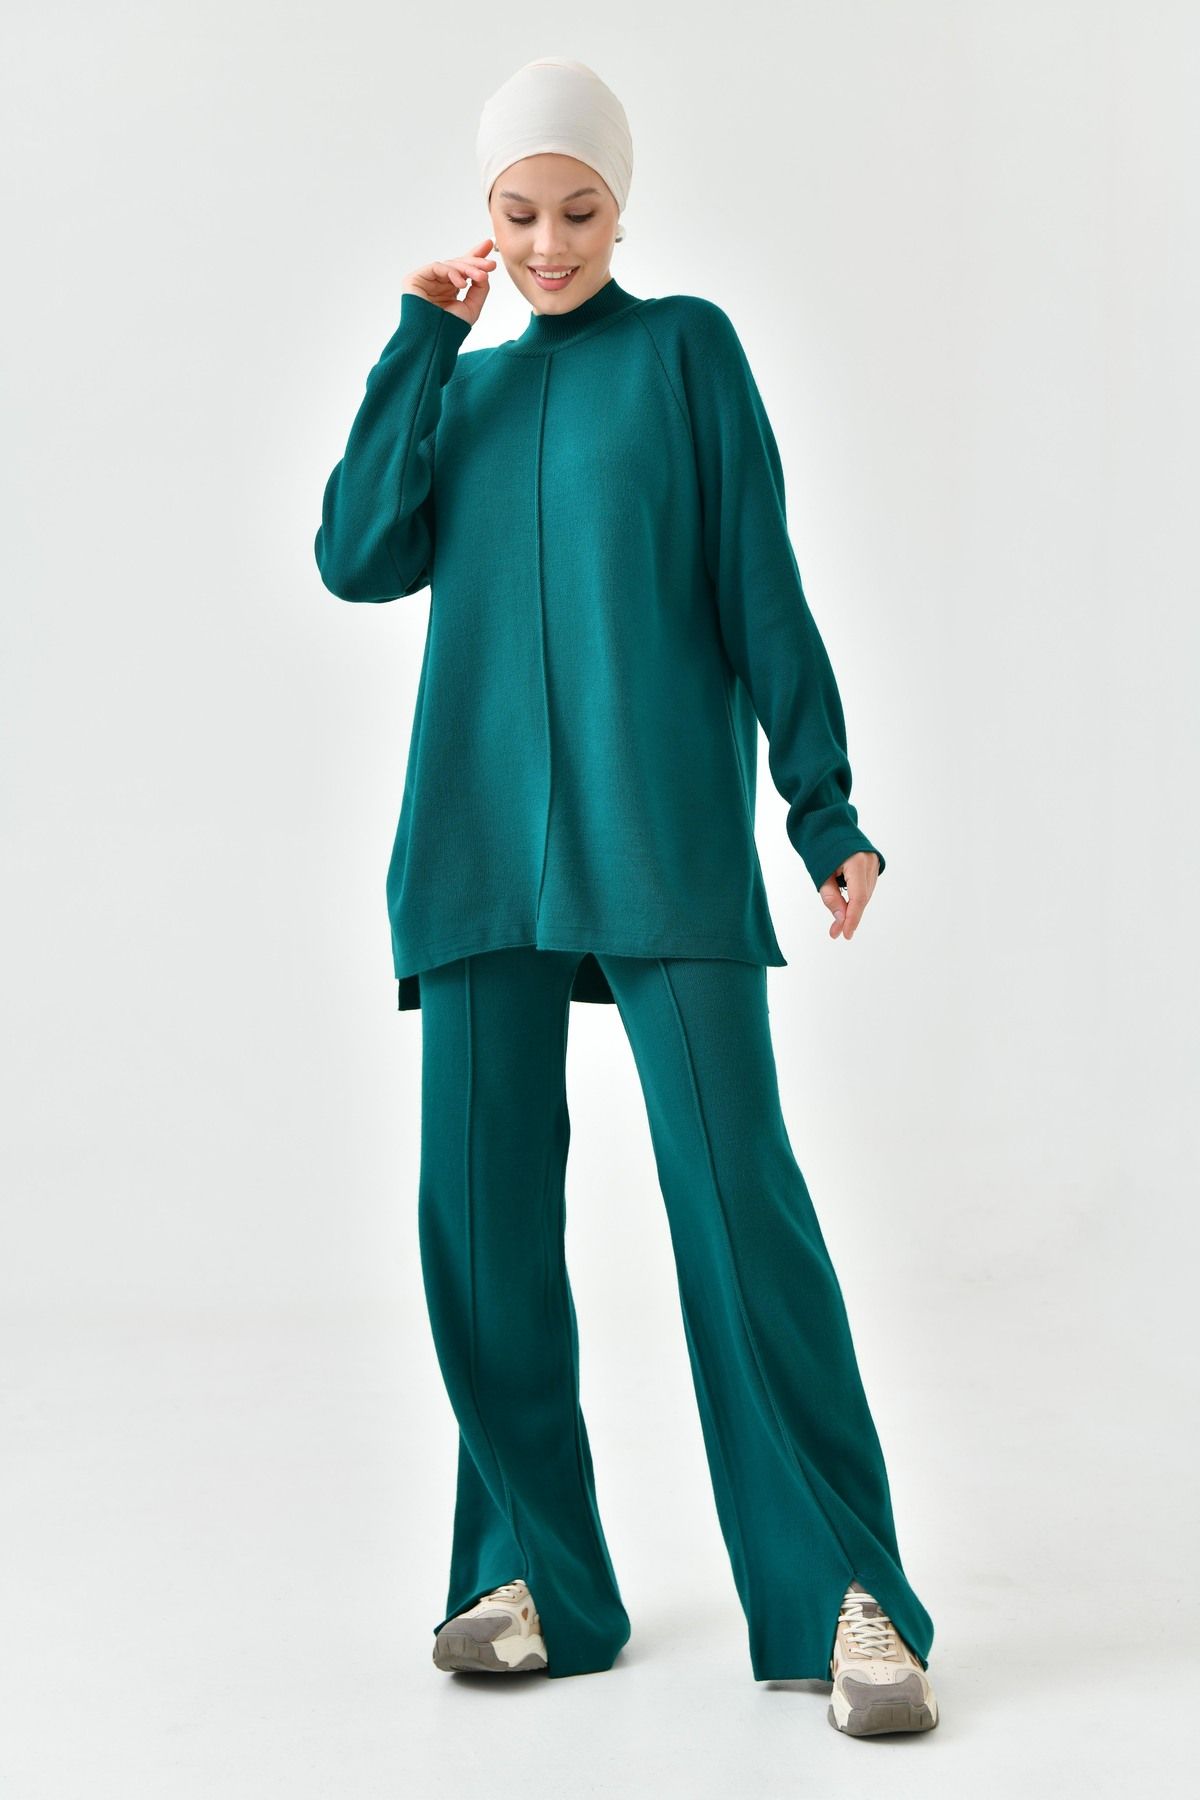 lovebox Modest Triko Kumaş Oversize Yeşil Kazak ve Yüksek Bel Pantolon Tesettür Alt-Üst Triko Takım 1070